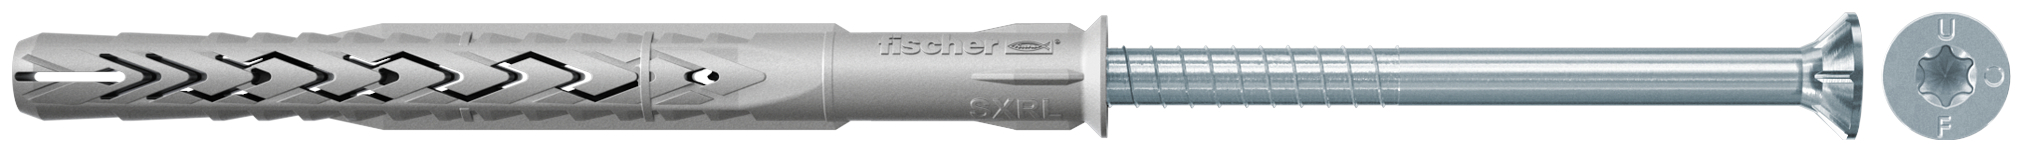 fischer Tasselli prolungati SXRL 8x120 T (1 Pz.) Tassello prolungato in nylon con marcatura CE con vite premontata T.S.P. impronta torx fie3160